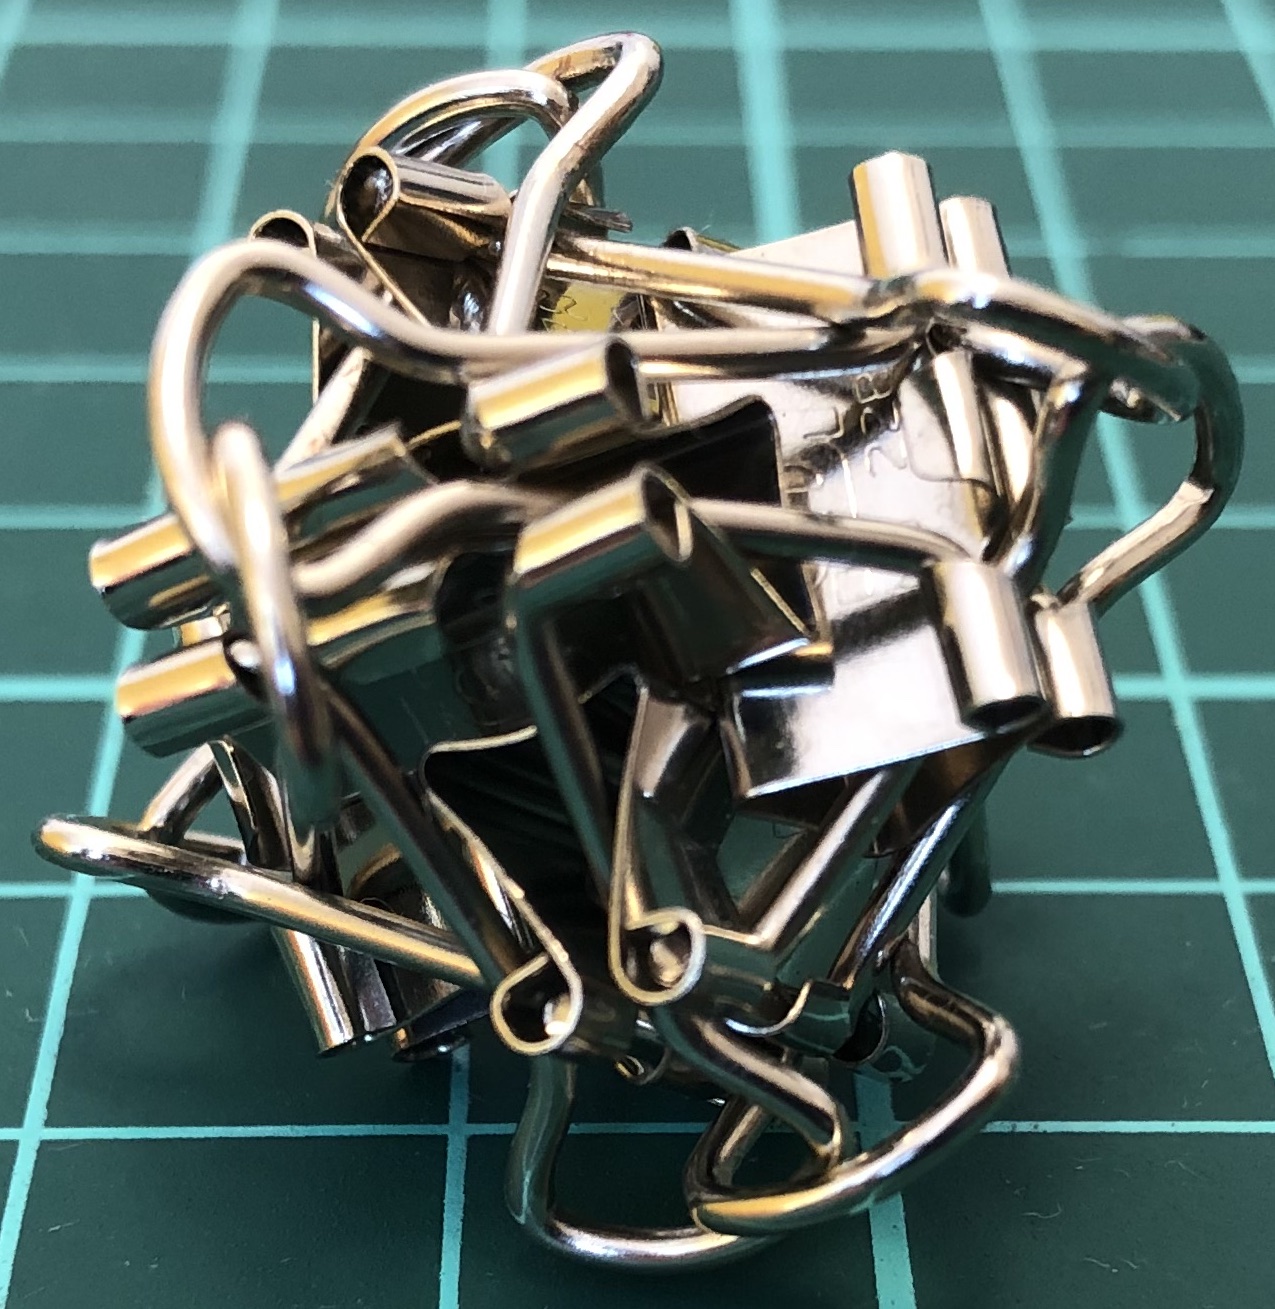 6 binder clips with interlocking handles